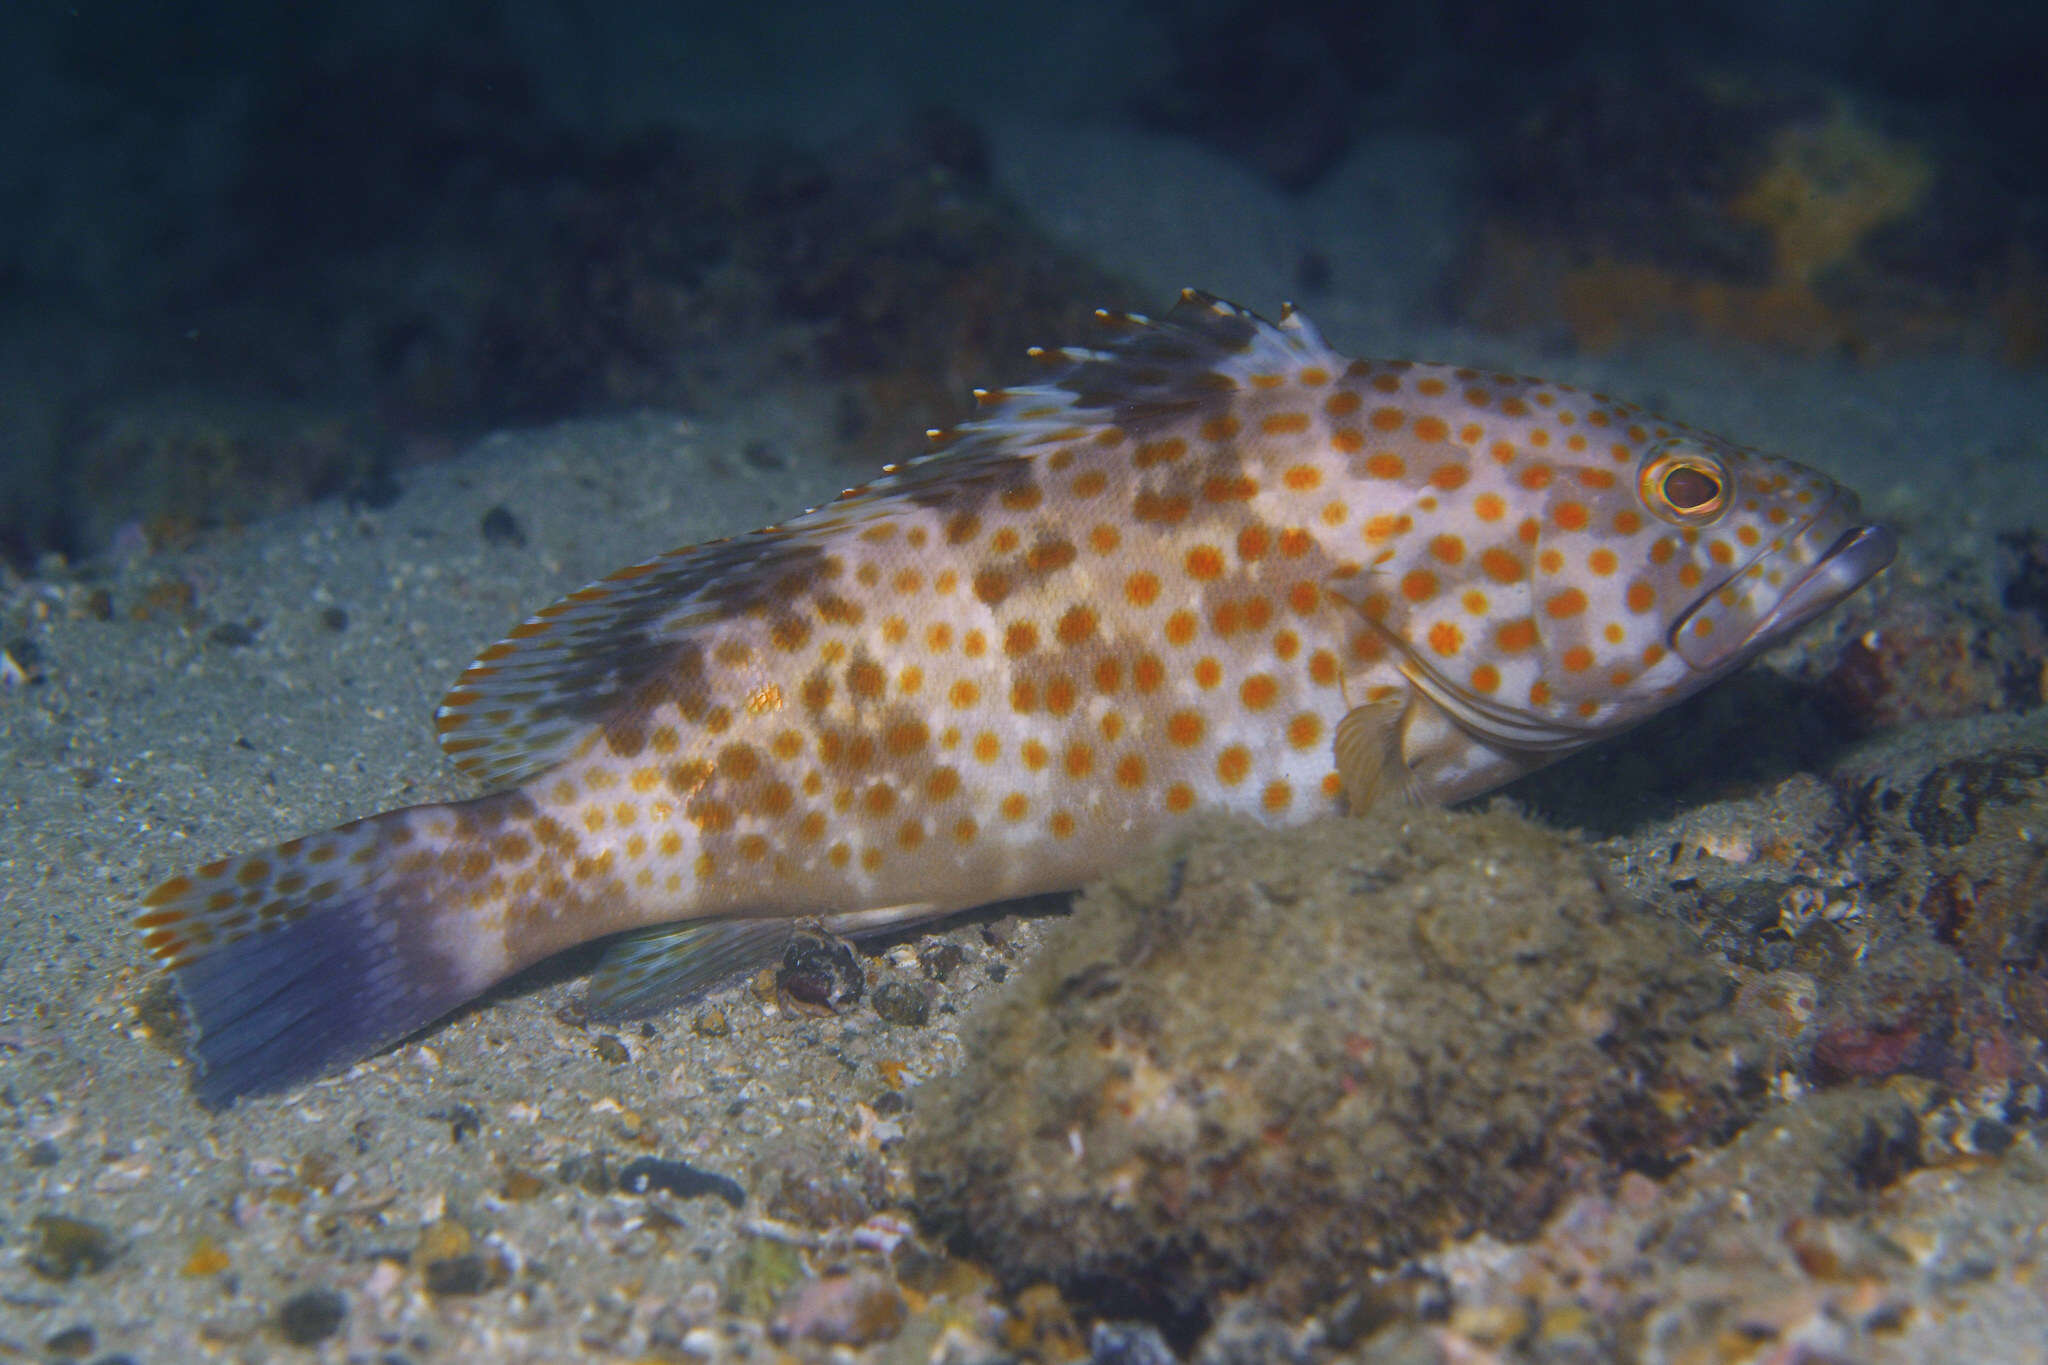 Image of Duskytail grouper